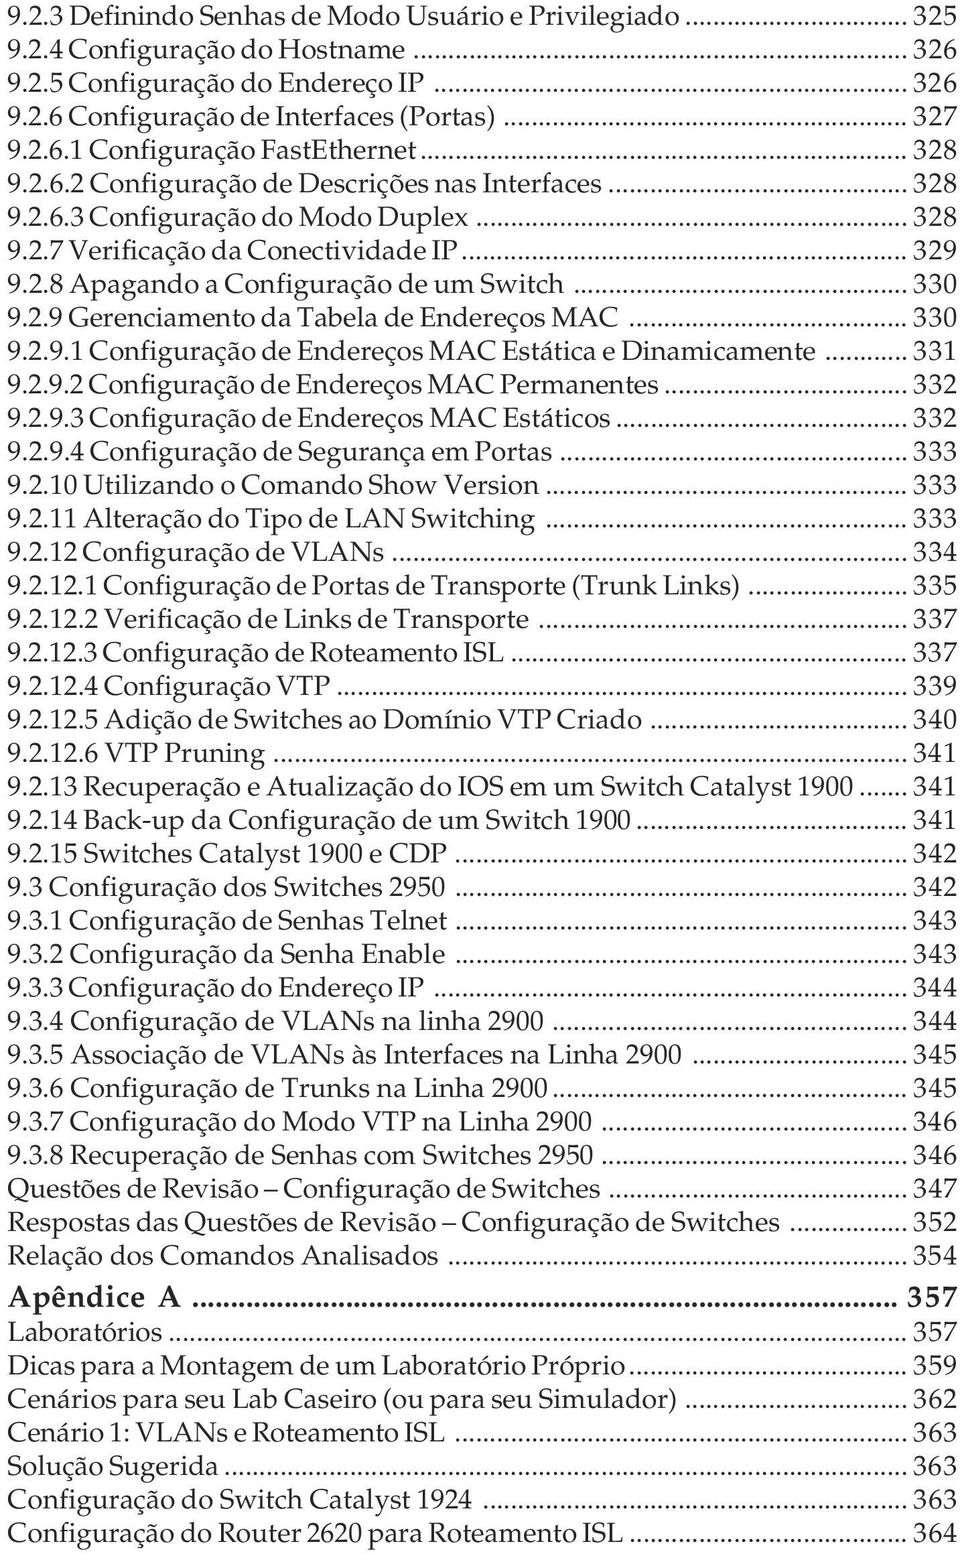 .. 330 9.2.9 Gerenciamento da Tabela de Endereços MAC... 330 9.2.9.1 Configuração de Endereços MAC Estática e Dinamicamente... 331 9.2.9.2 Configuração de Endereços MAC Permanentes... 332 9.2.9.3 Configuração de Endereços MAC Estáticos.